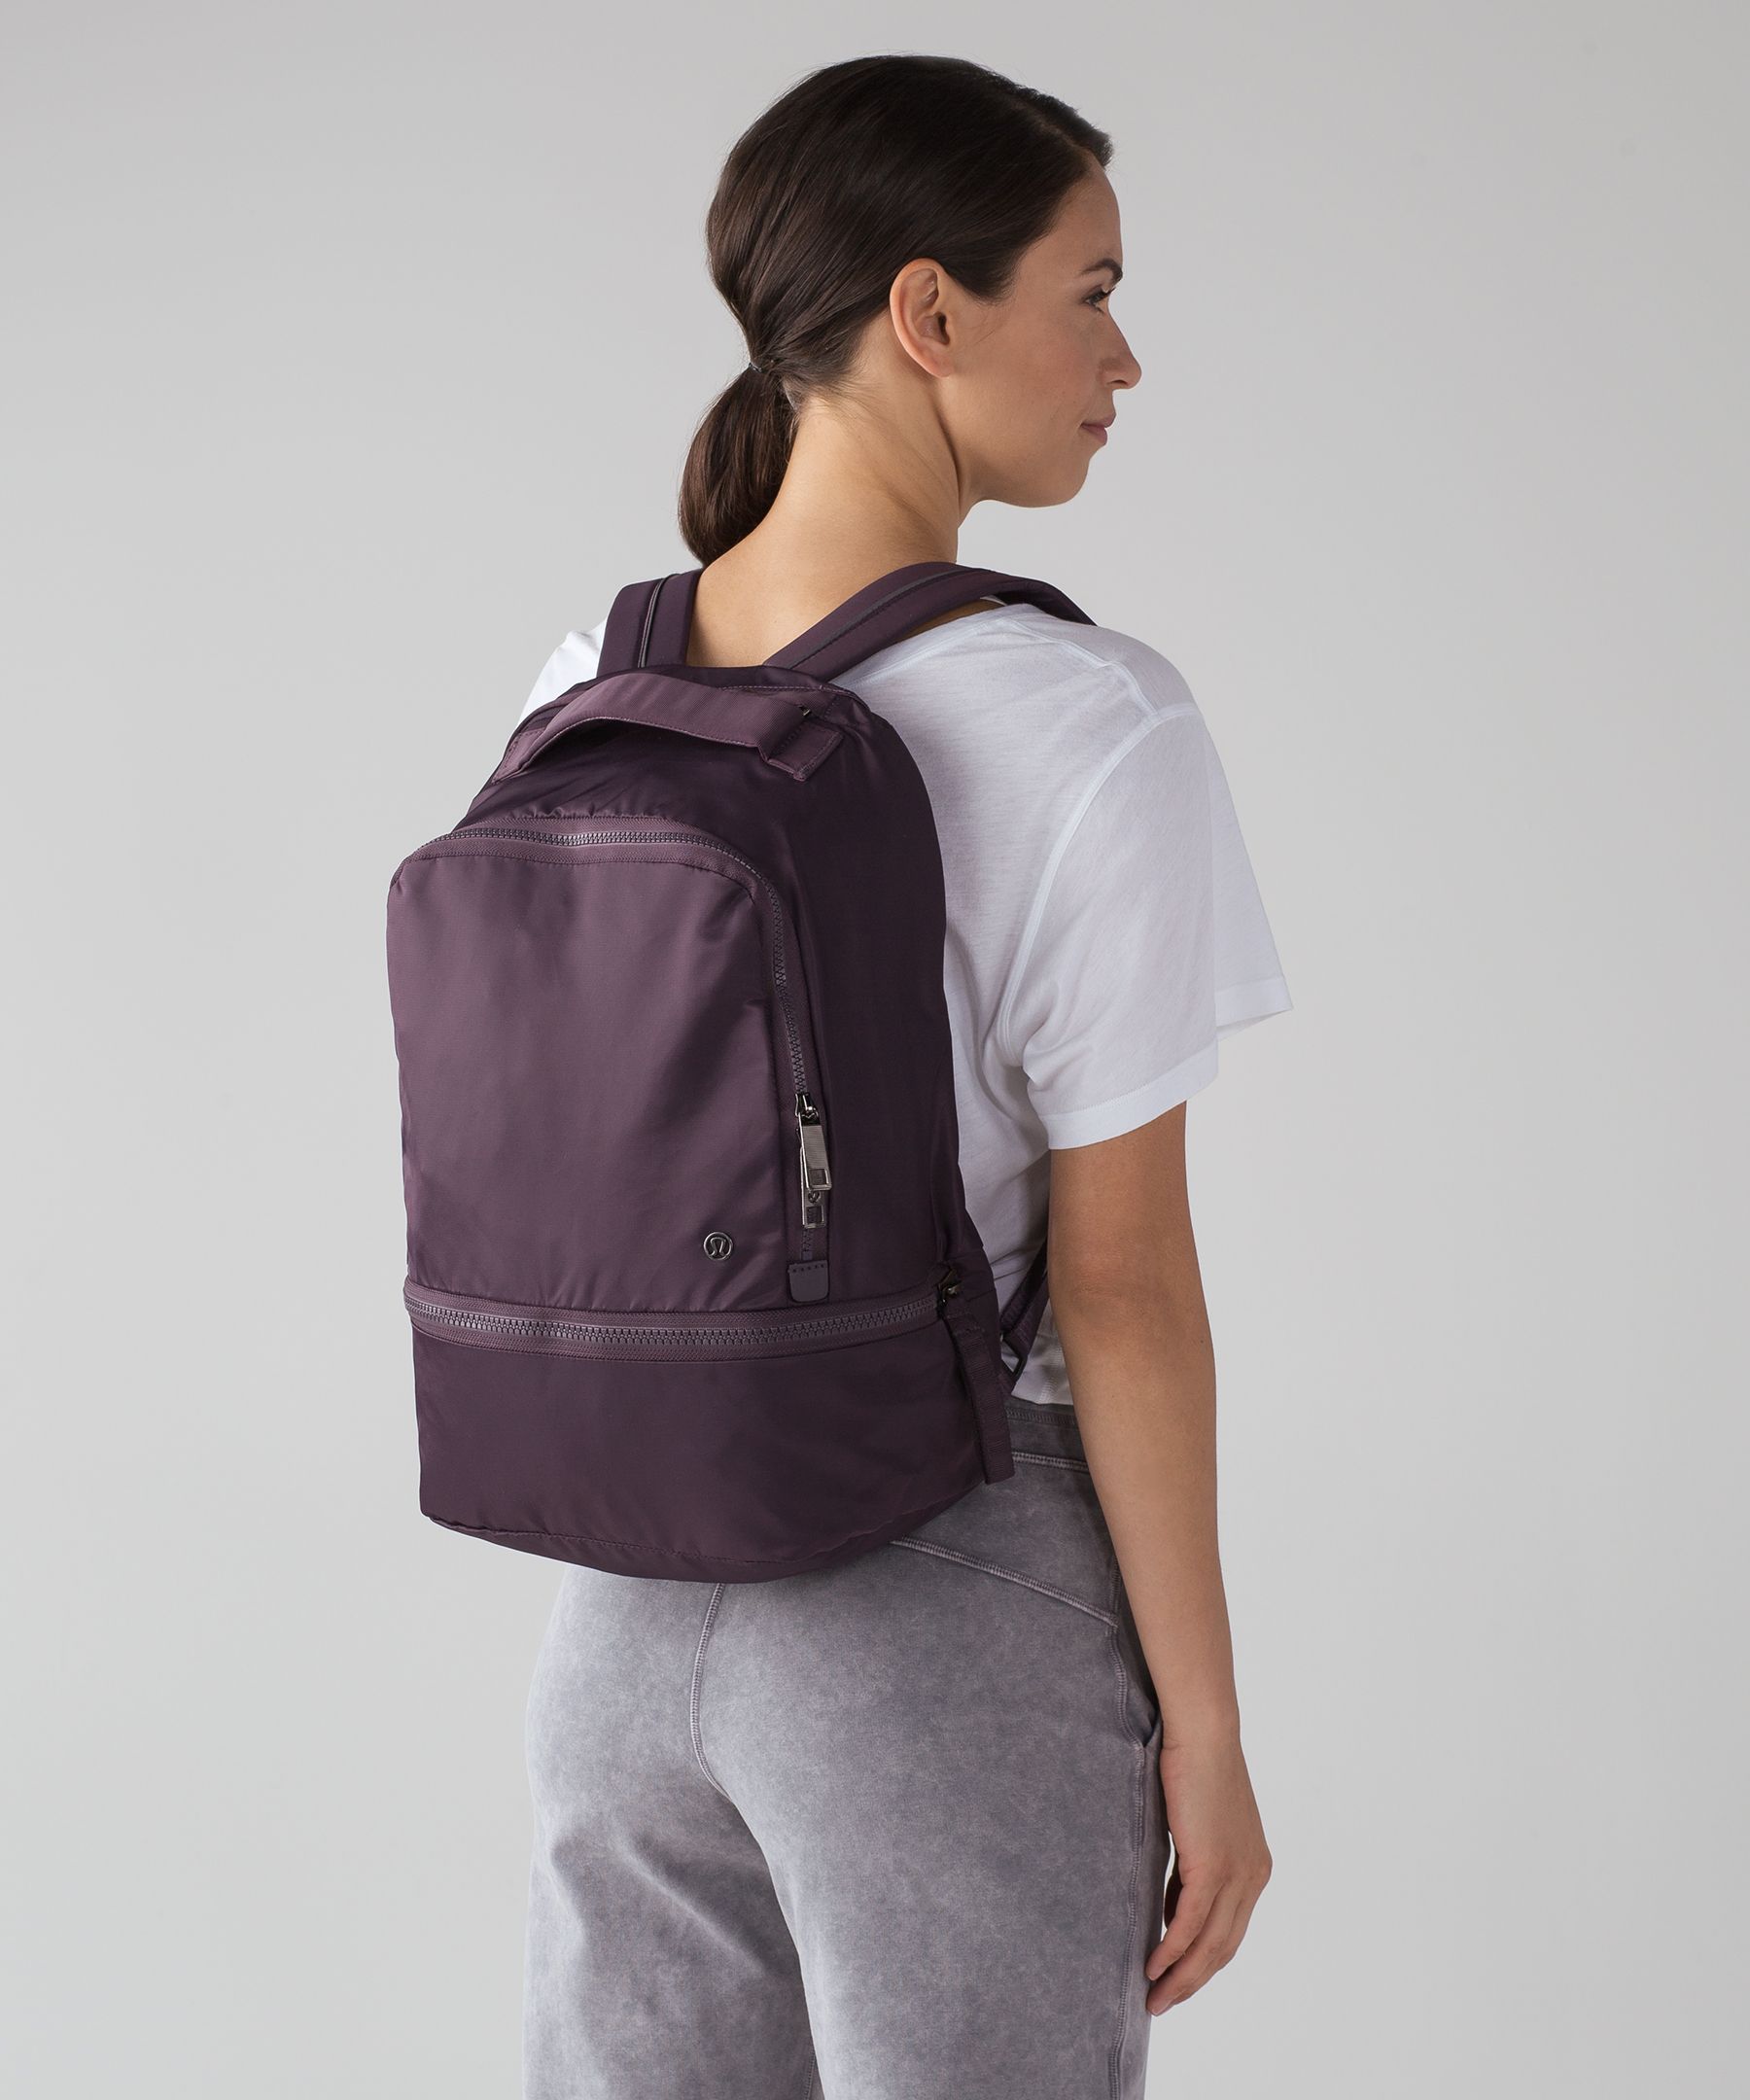 lululemon outlet backpack